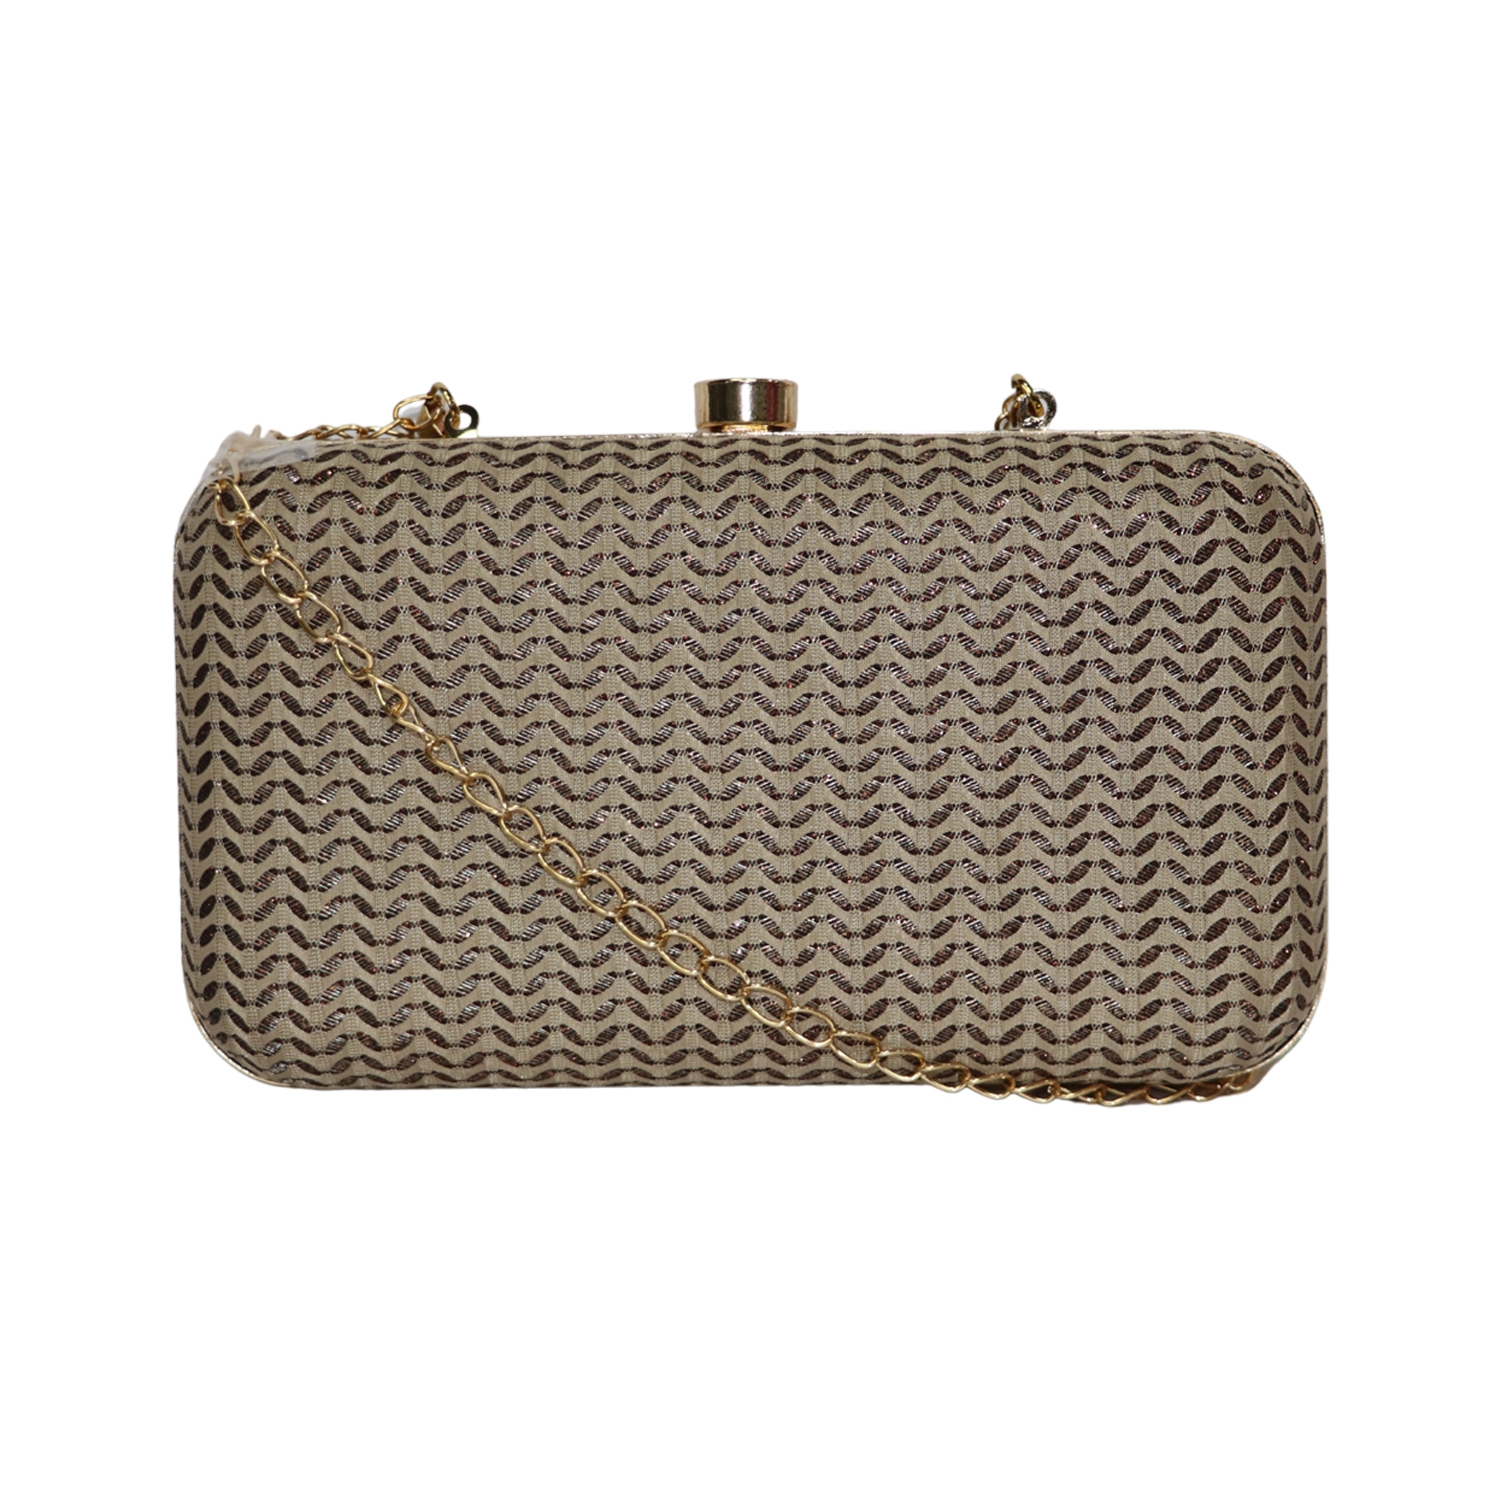 EMM | Wedding box clutch purse with handle 0